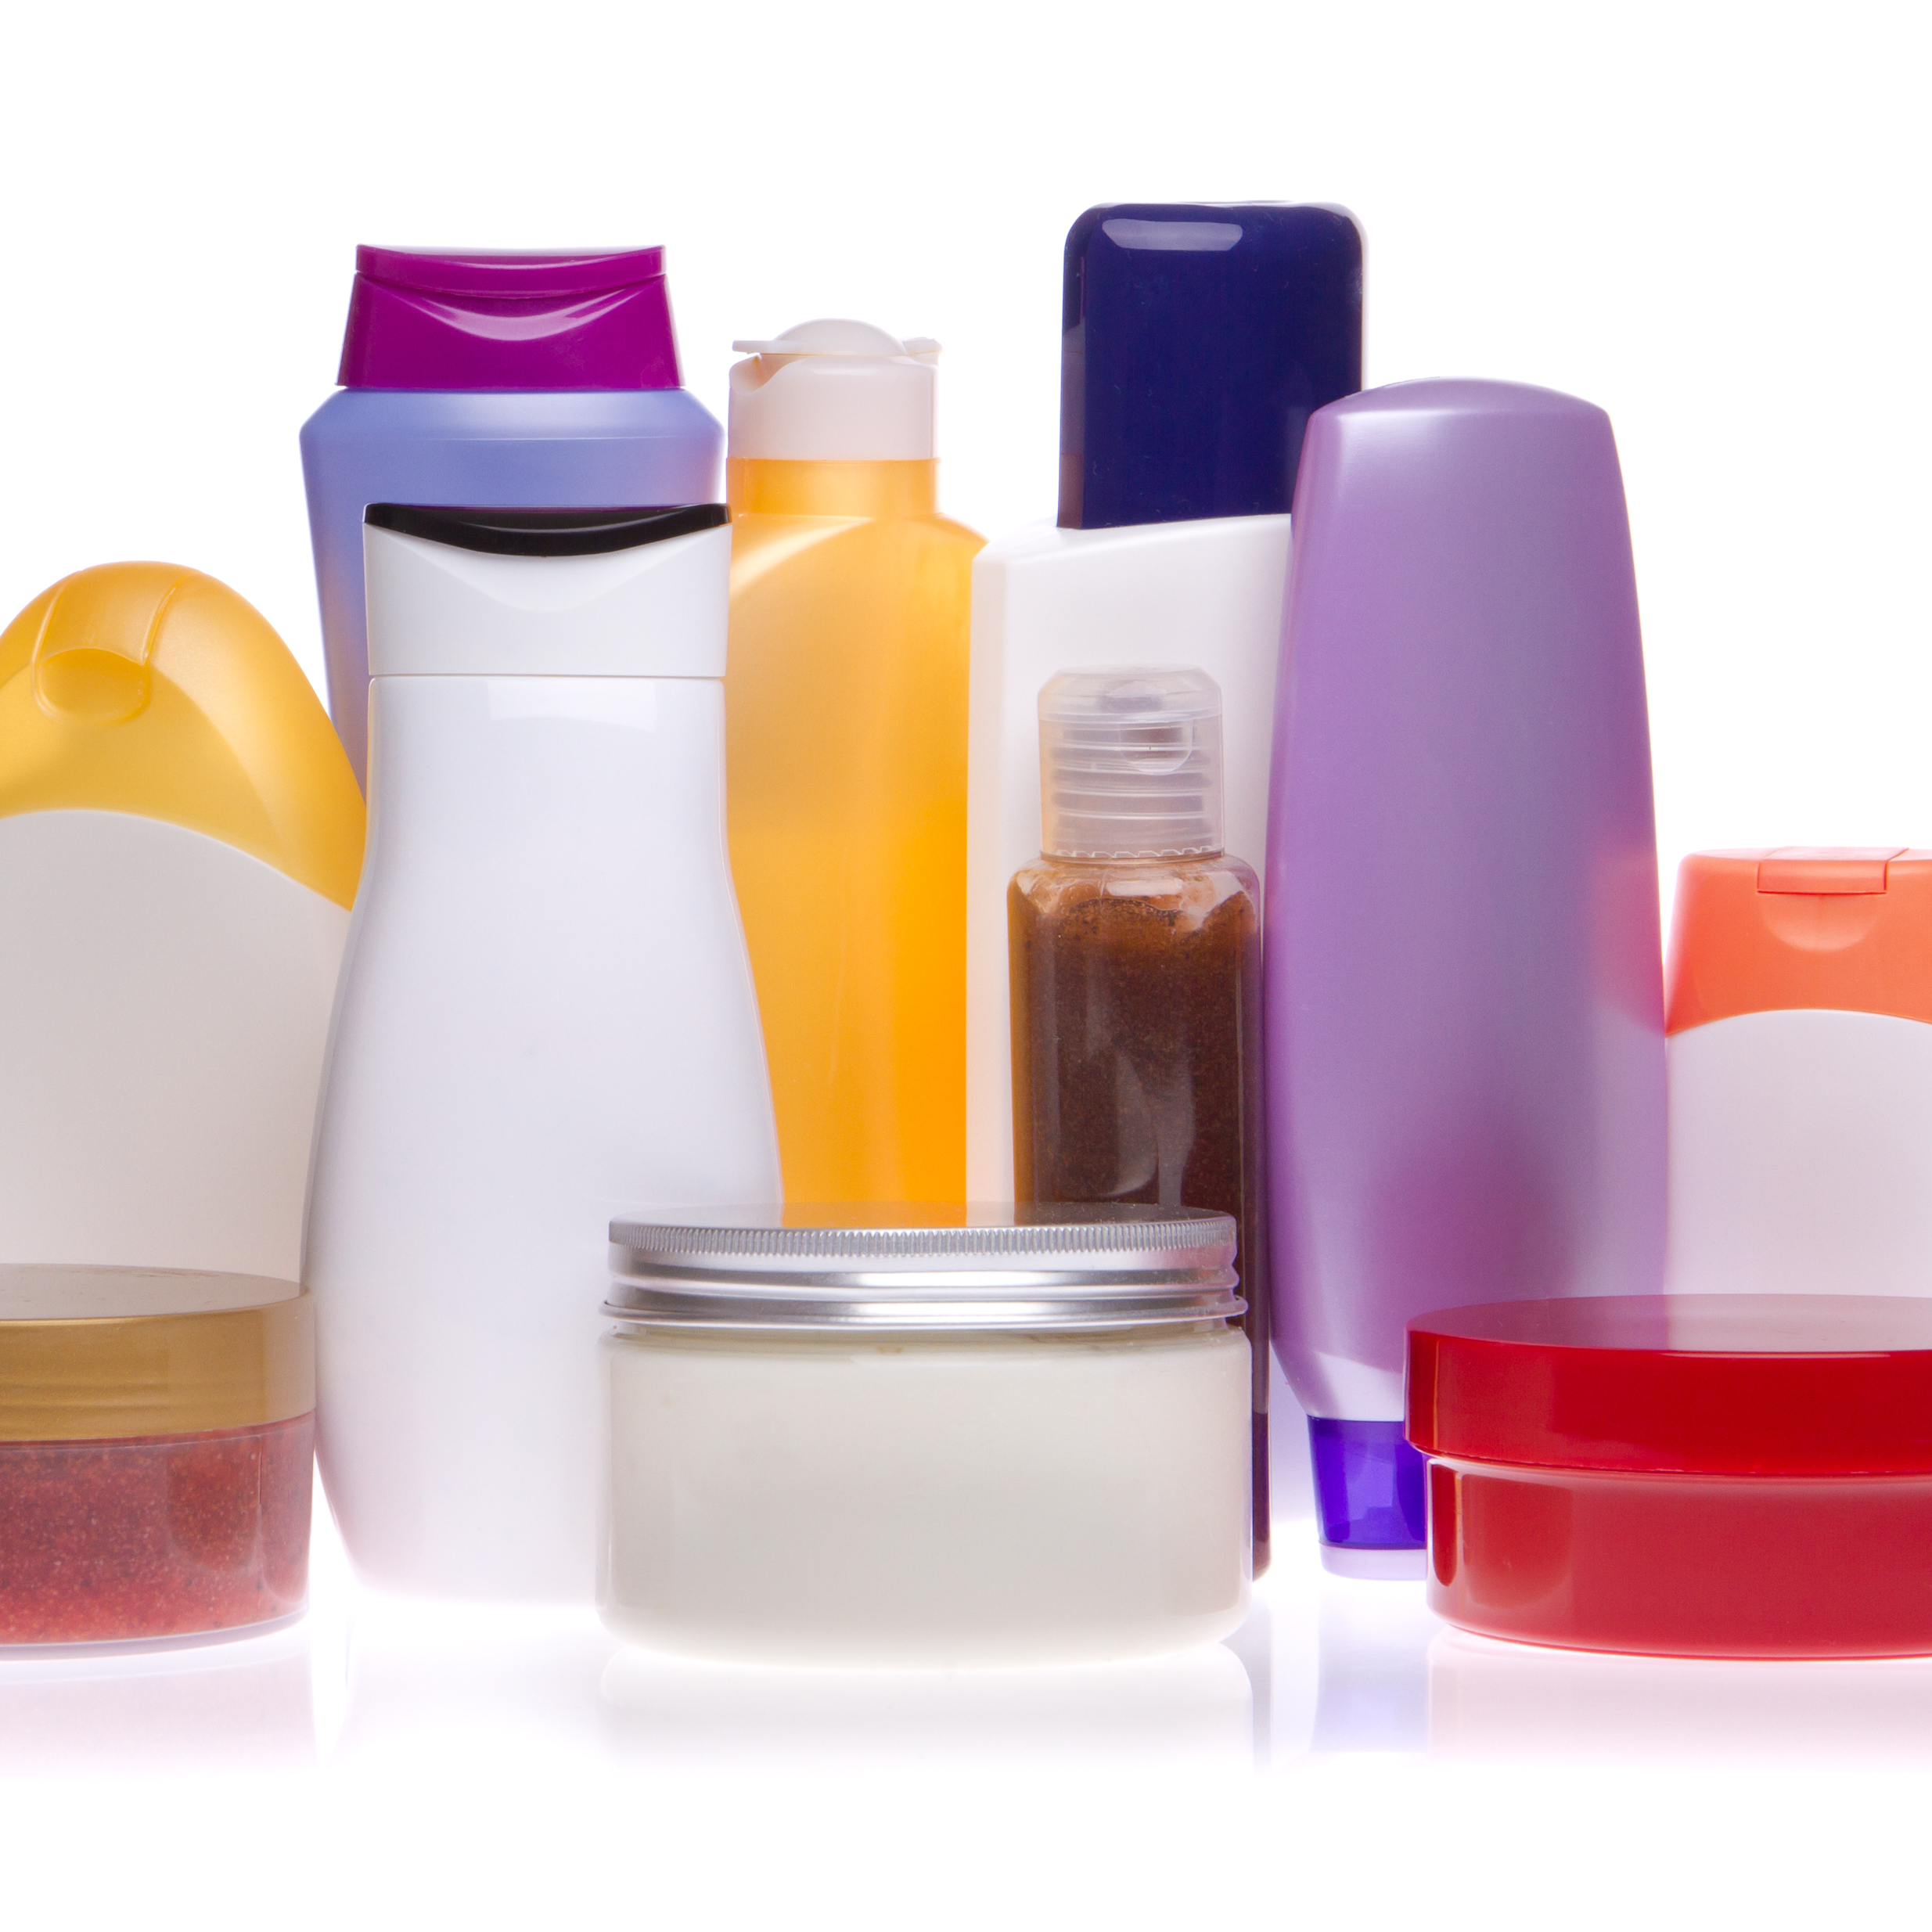 Ny undersøgelse af 700 kosmetiske produkter for MI